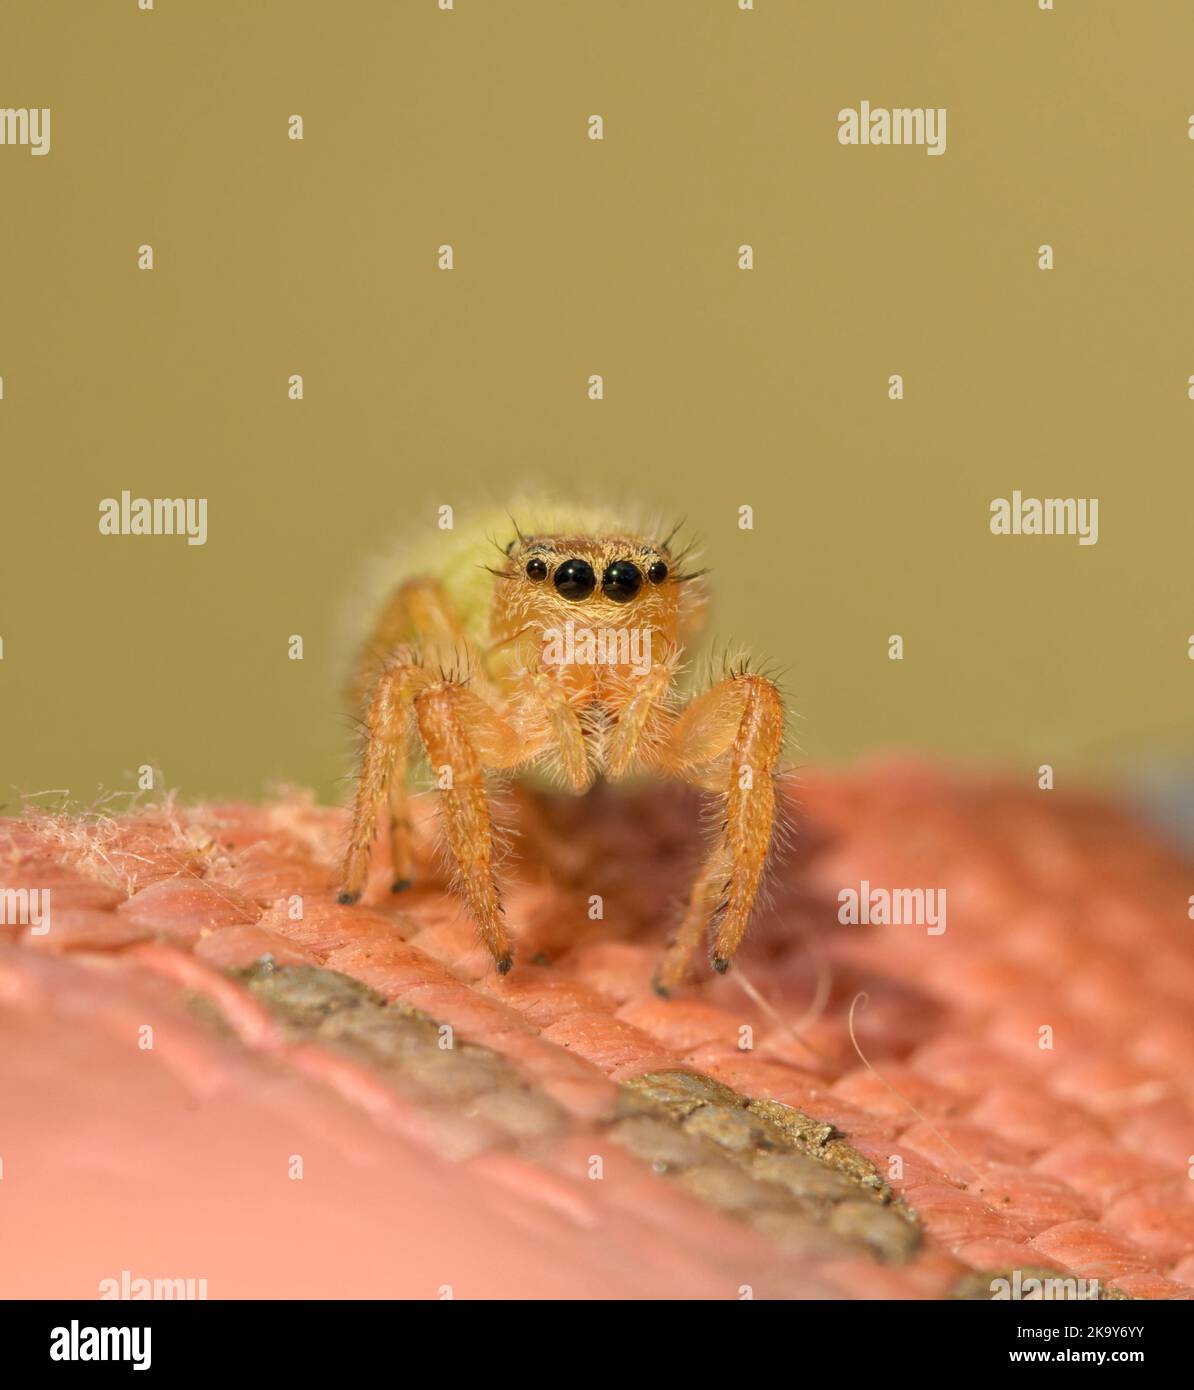 Adorable mignonne immature femelle Phidippus araignée sautant sur nylon rose avec fond vert pâle Banque D'Images